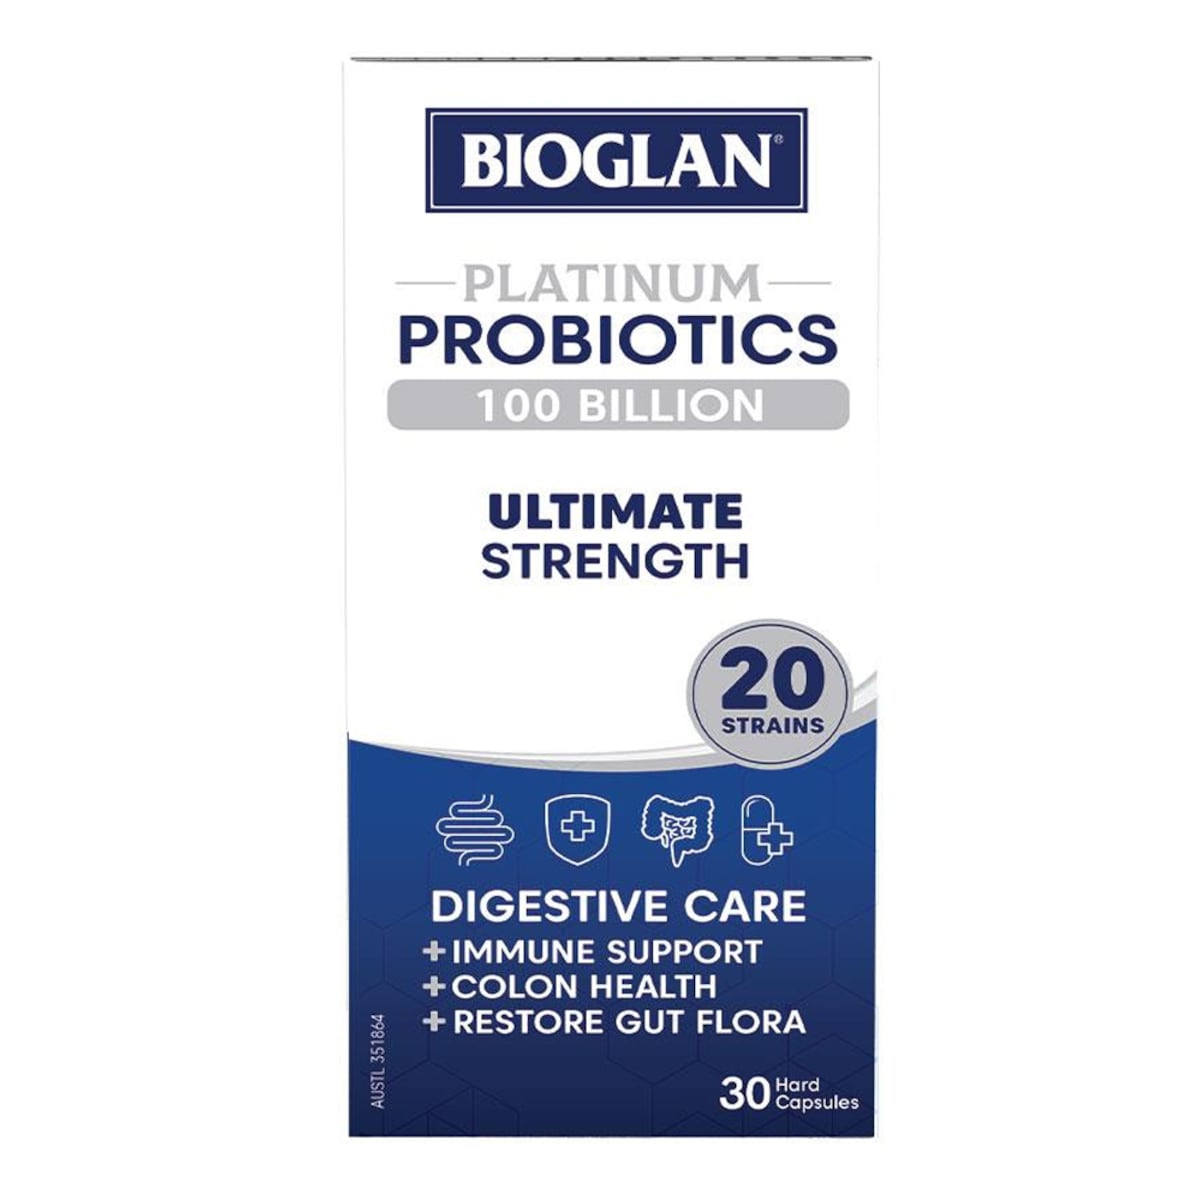 Bioglan Platinum Probiotics 100 Billion Ultimate Strength 30 Capsules